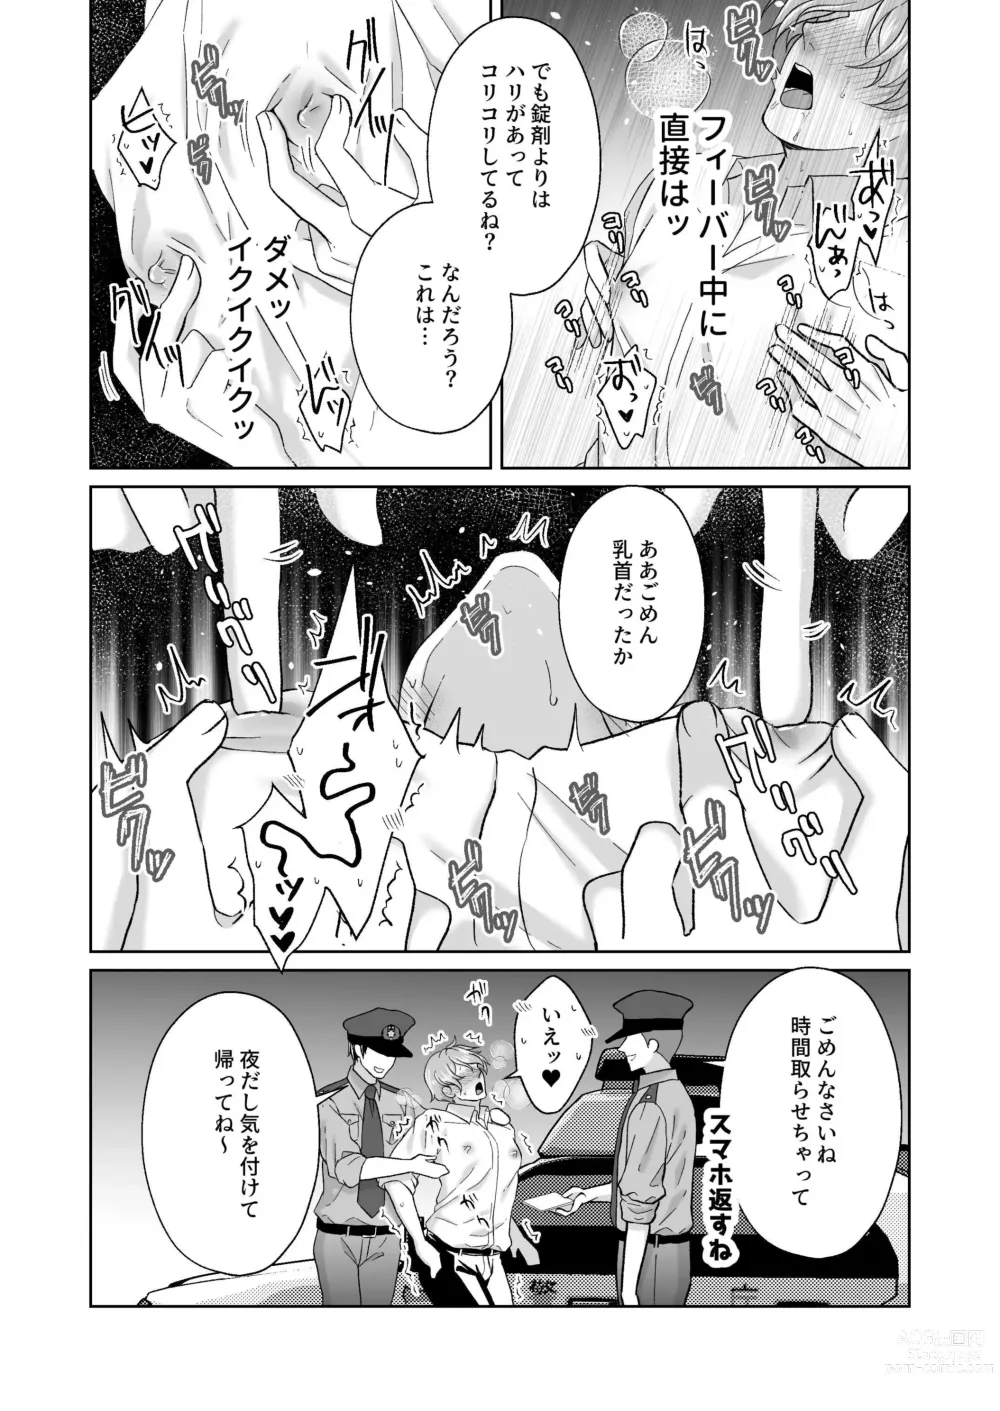 Page 53 of doujinshi Chikubi Ikusei Game